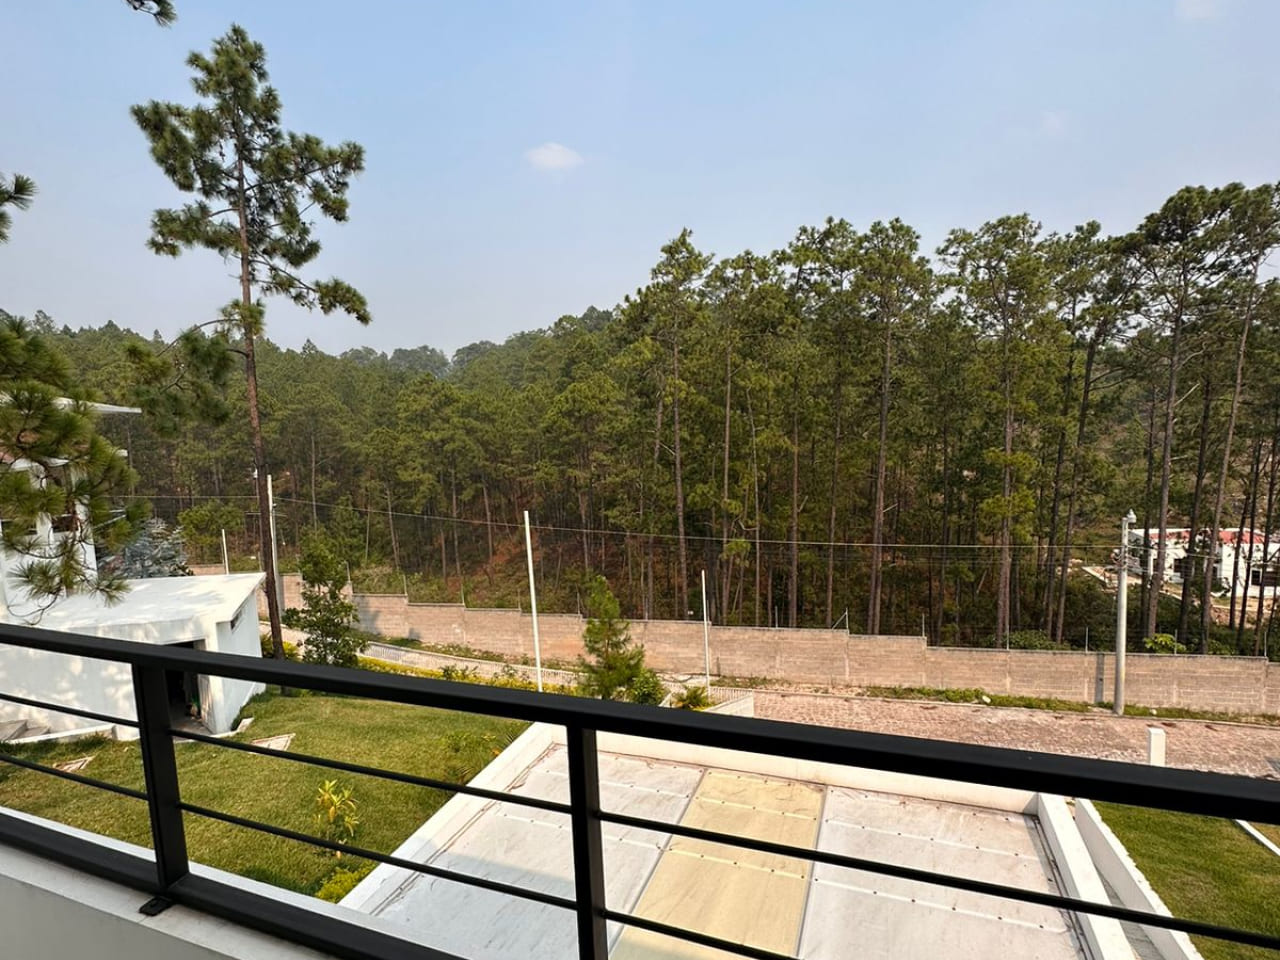 Fotografía donde se puede apreciar la vista desde el balcón, que da hacia el exterior de la propiedad y cuenta con un bello paisaje de una arboleda de pinos.